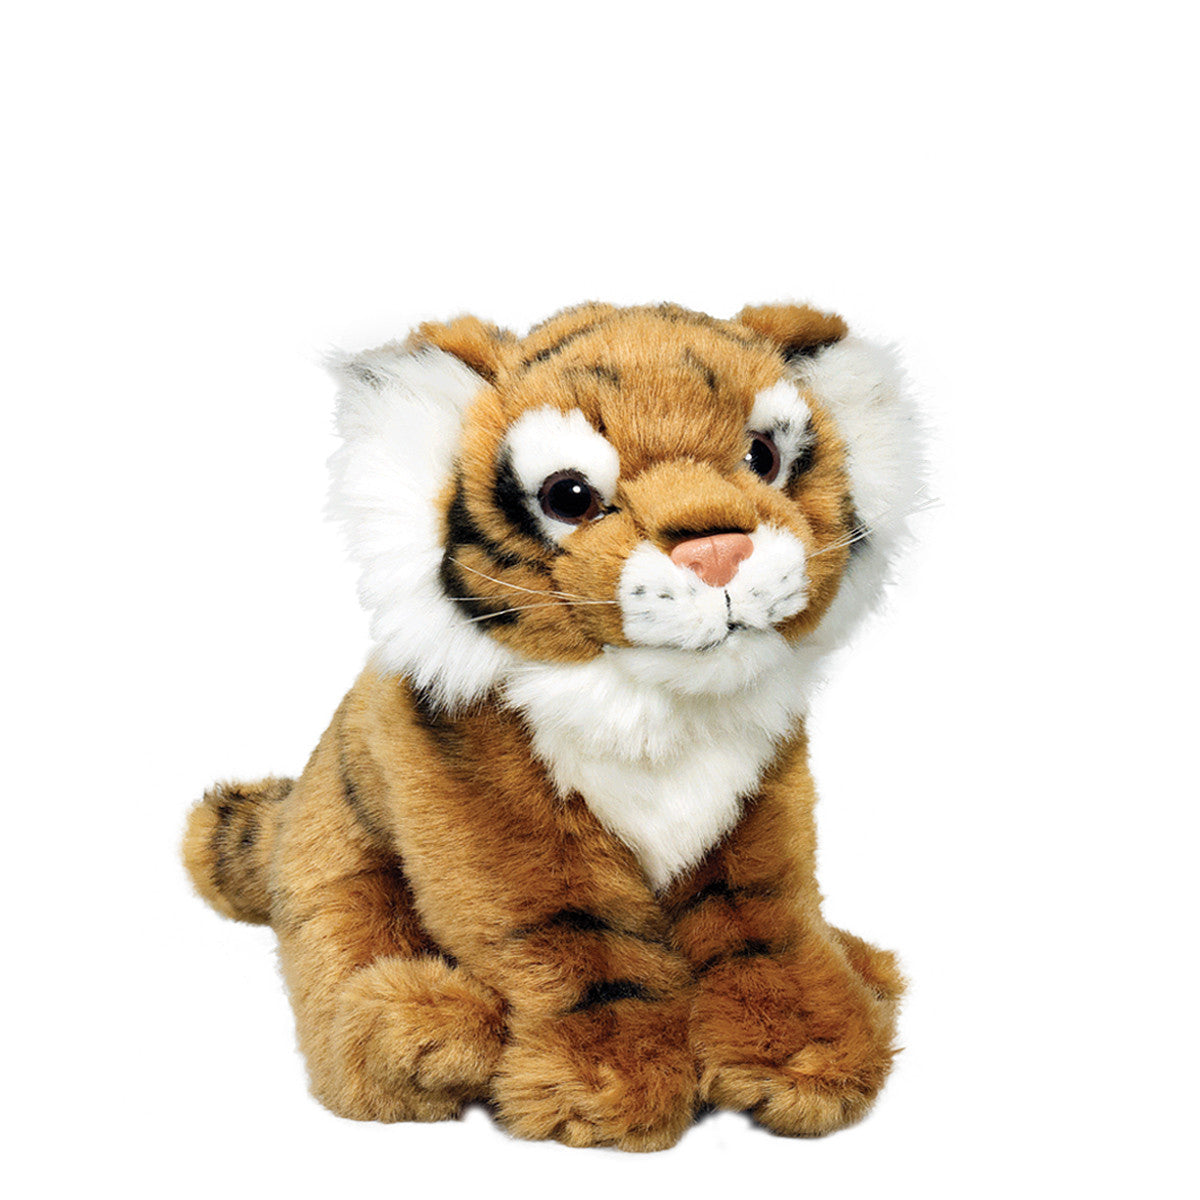 Tiger - WWF-Canada